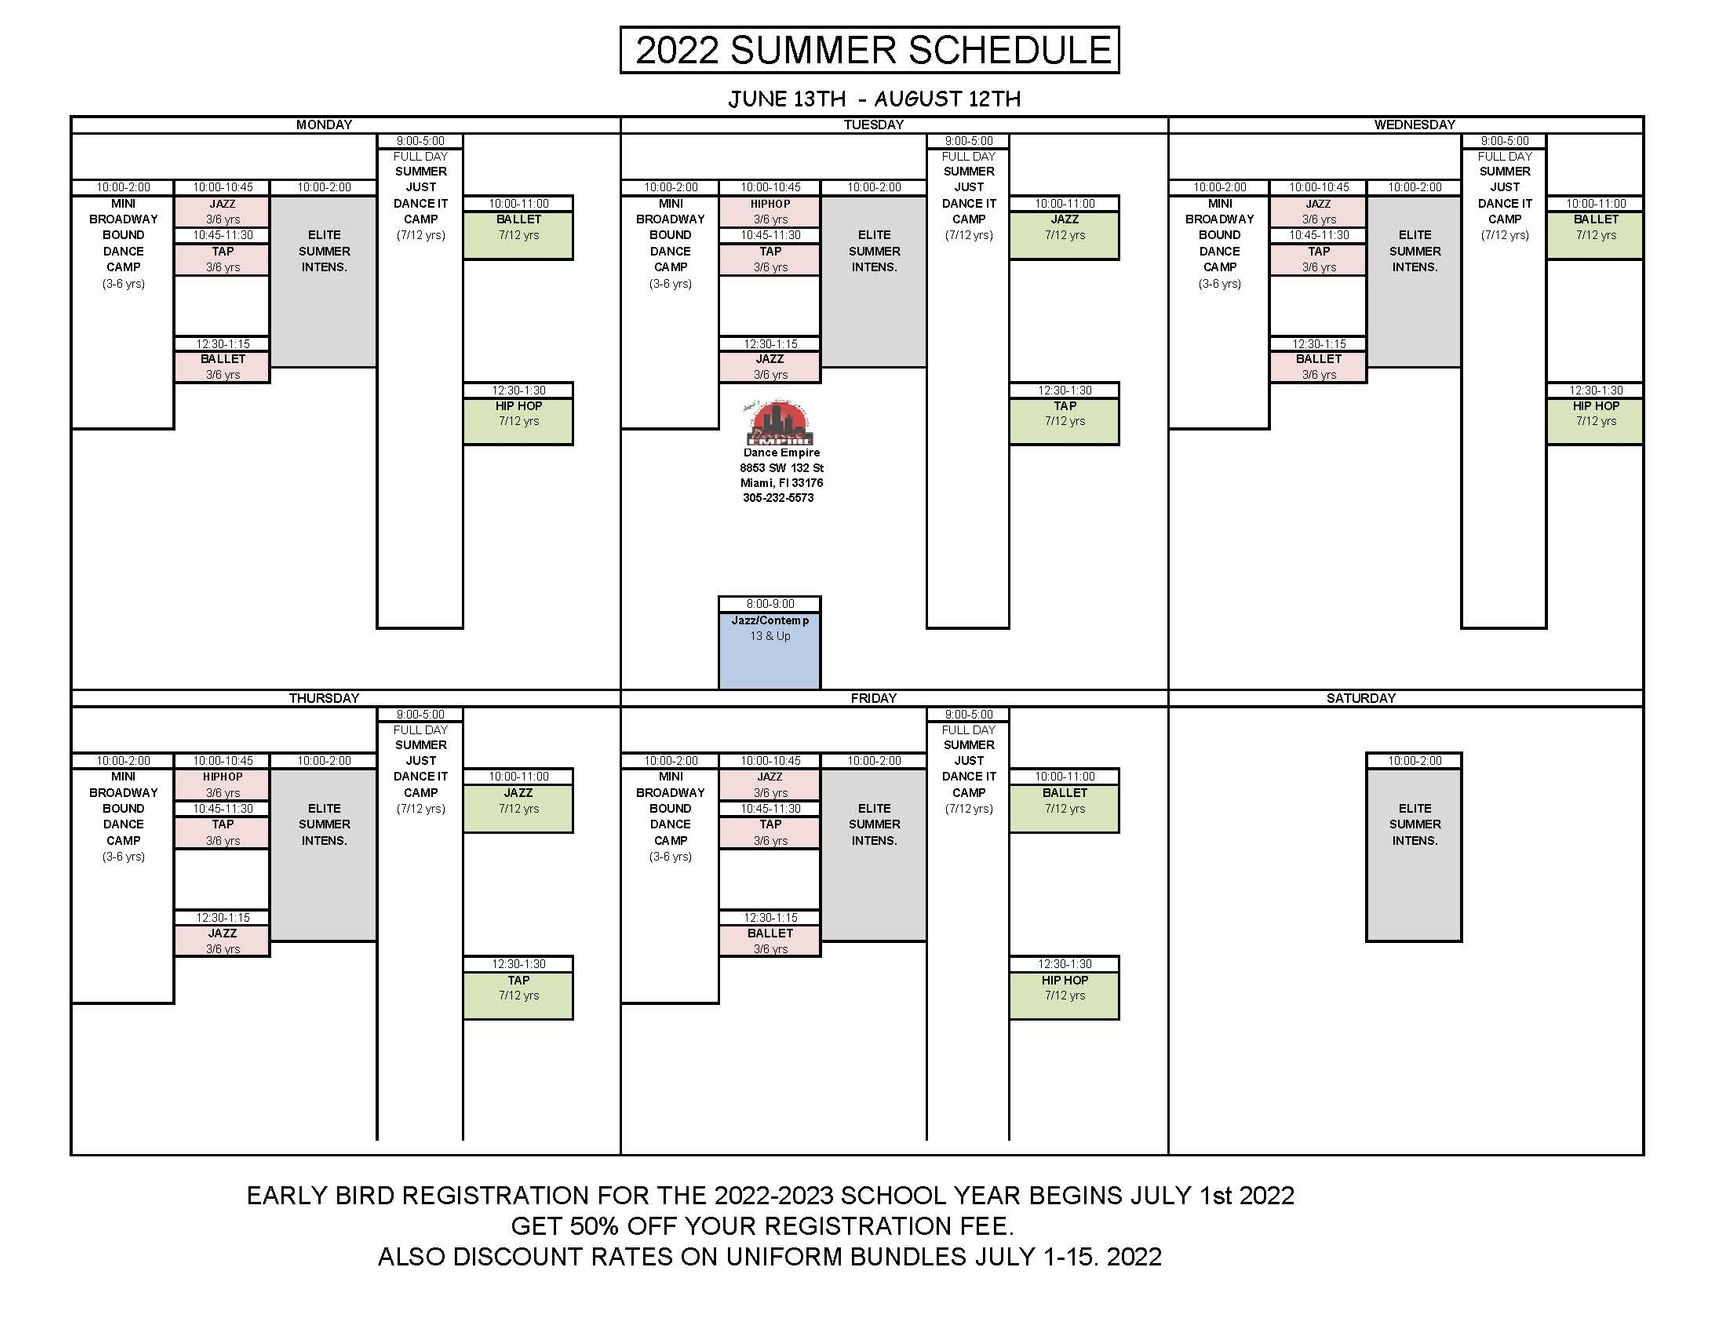 2022 Summer Schedule Updated.jpg